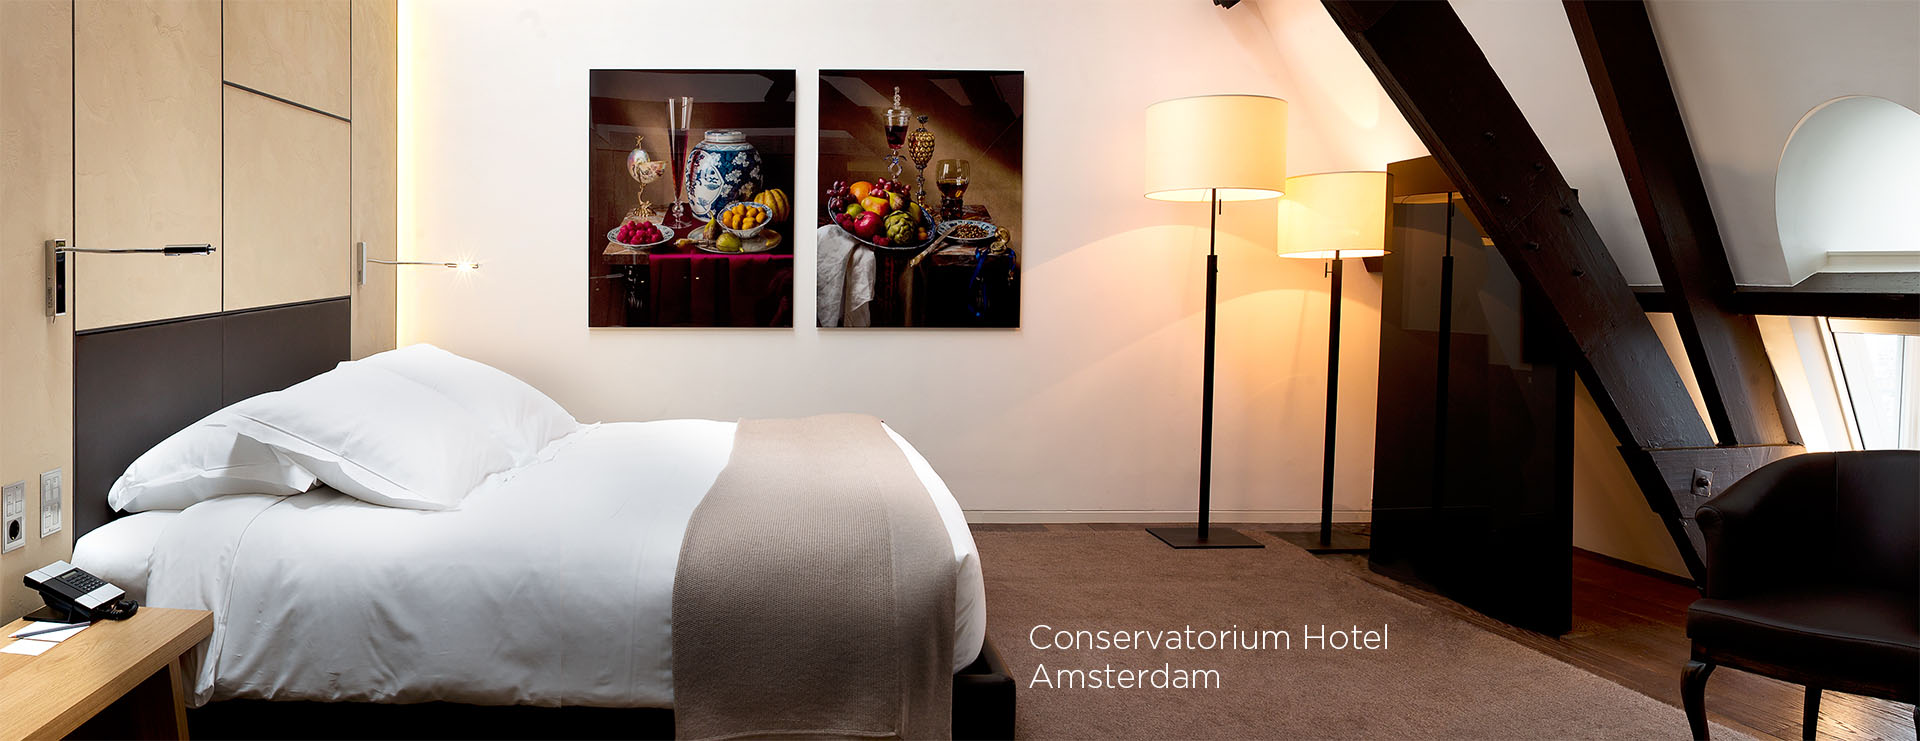 Conservatorium Hotel Amsterdam